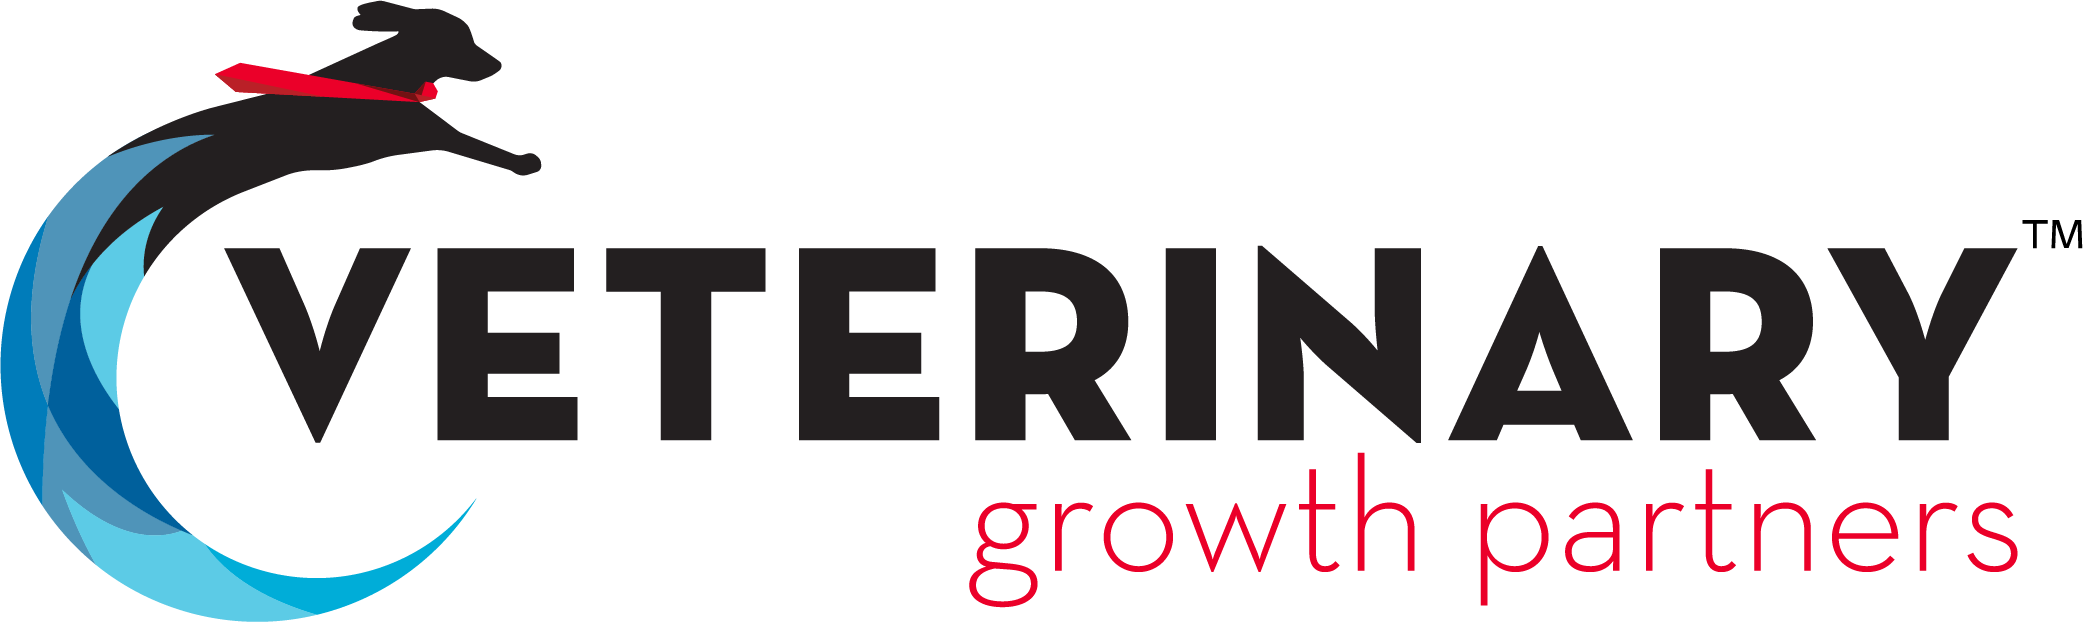 Veterinary Growth Partners logo